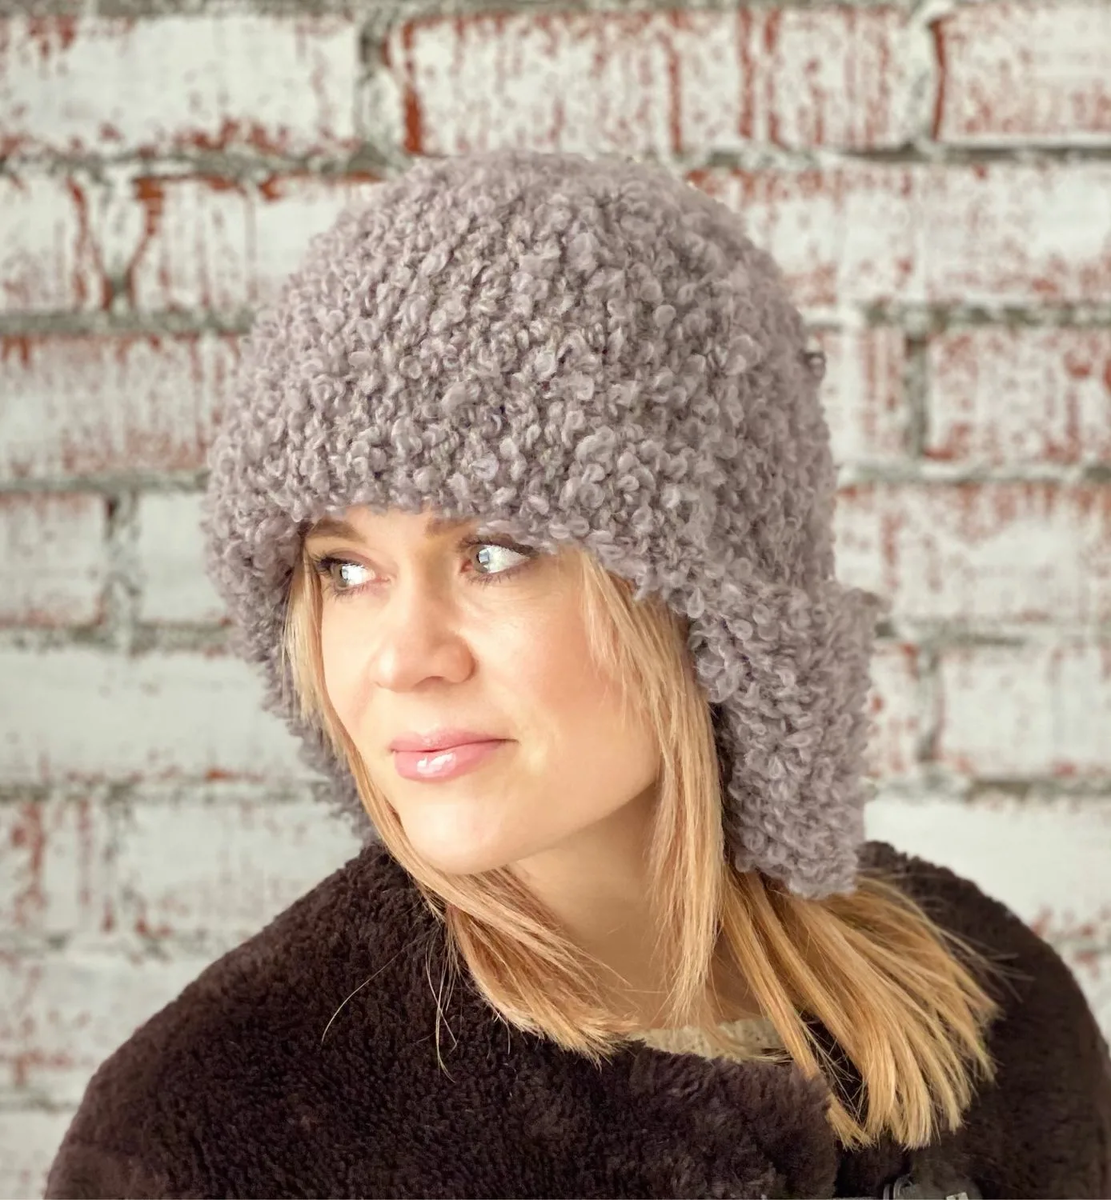 Выбрать шапку на зиму непросто. Одним из вариантом может стать традиционный русский головной убор – шапка-ушанка.